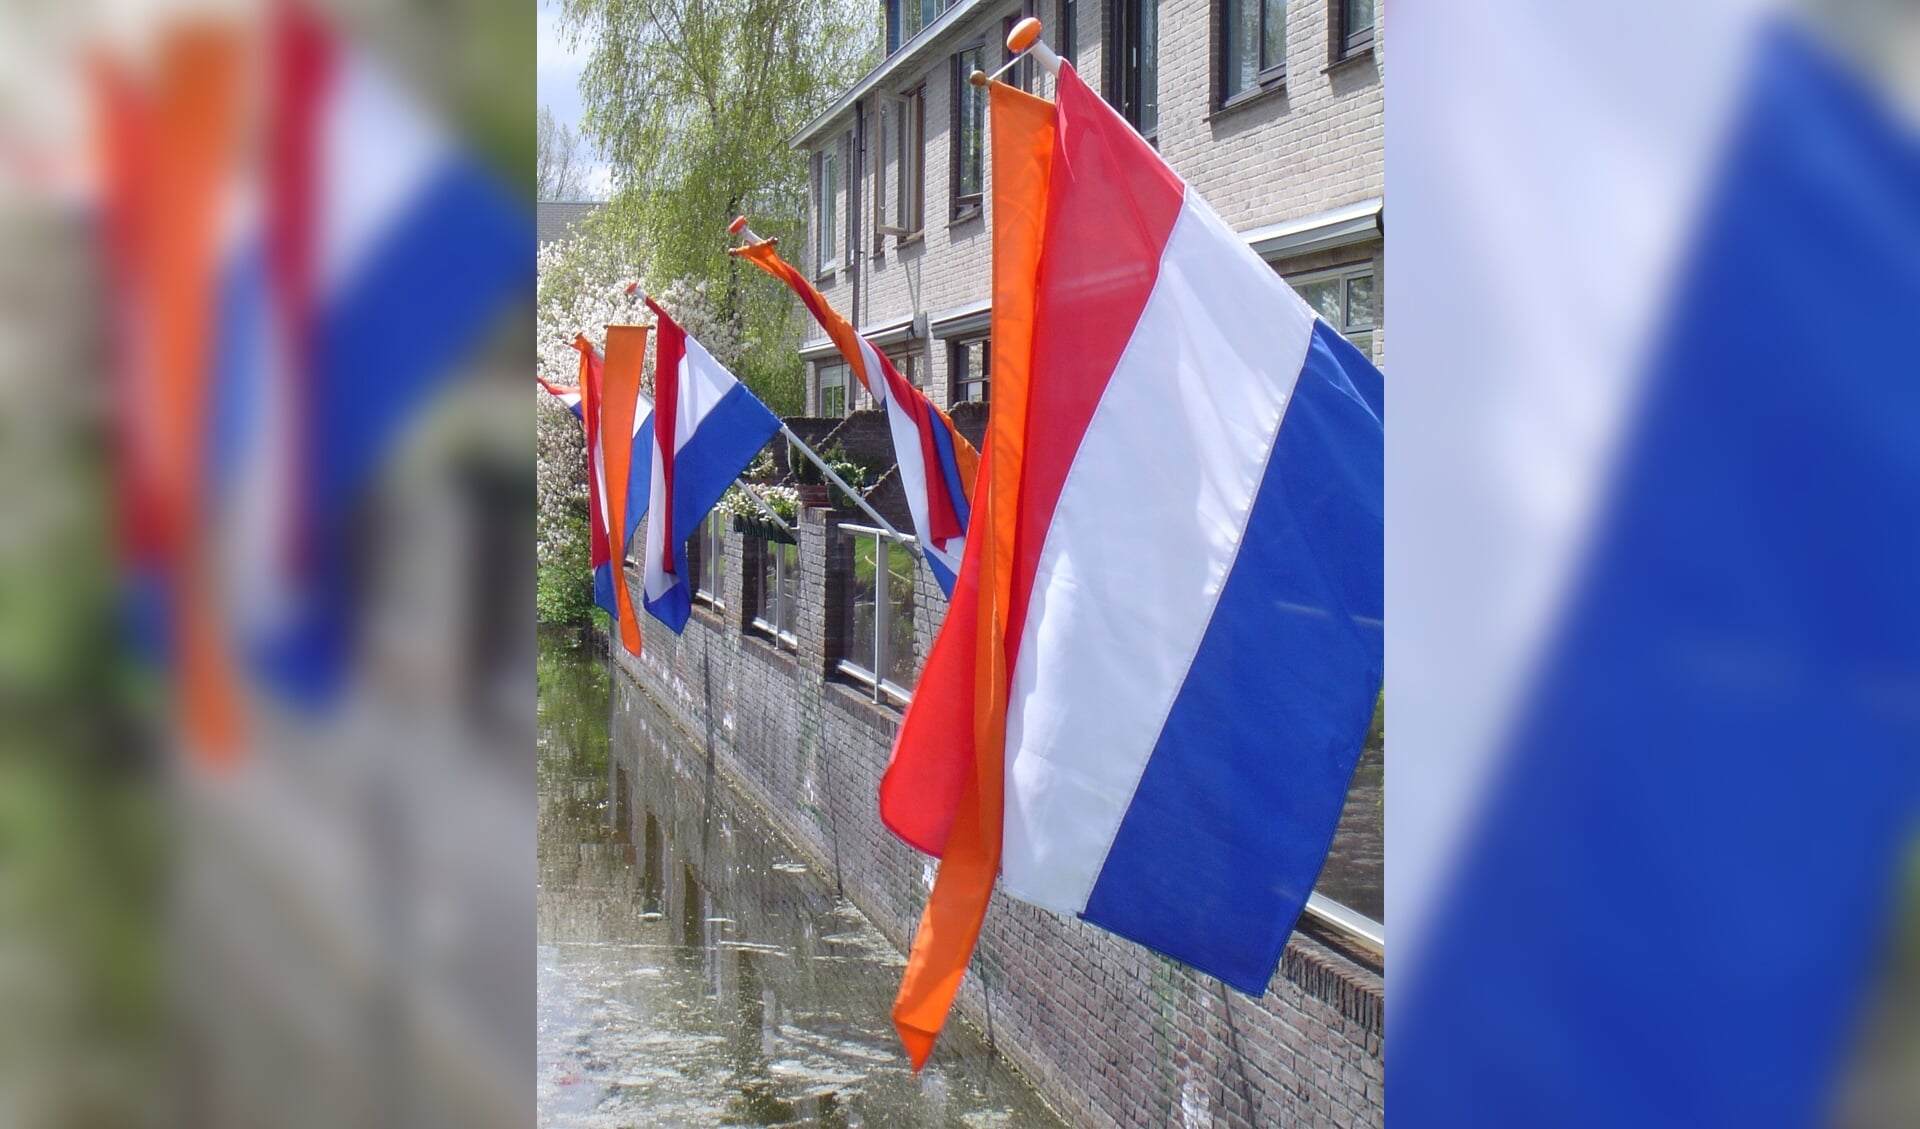 De Oranjevereniging Leiderdorp hoopt dat bij veel Leiderdorpse huizen op Koningsdag de vlag met oranje wimpel uitgestoken wordt. 